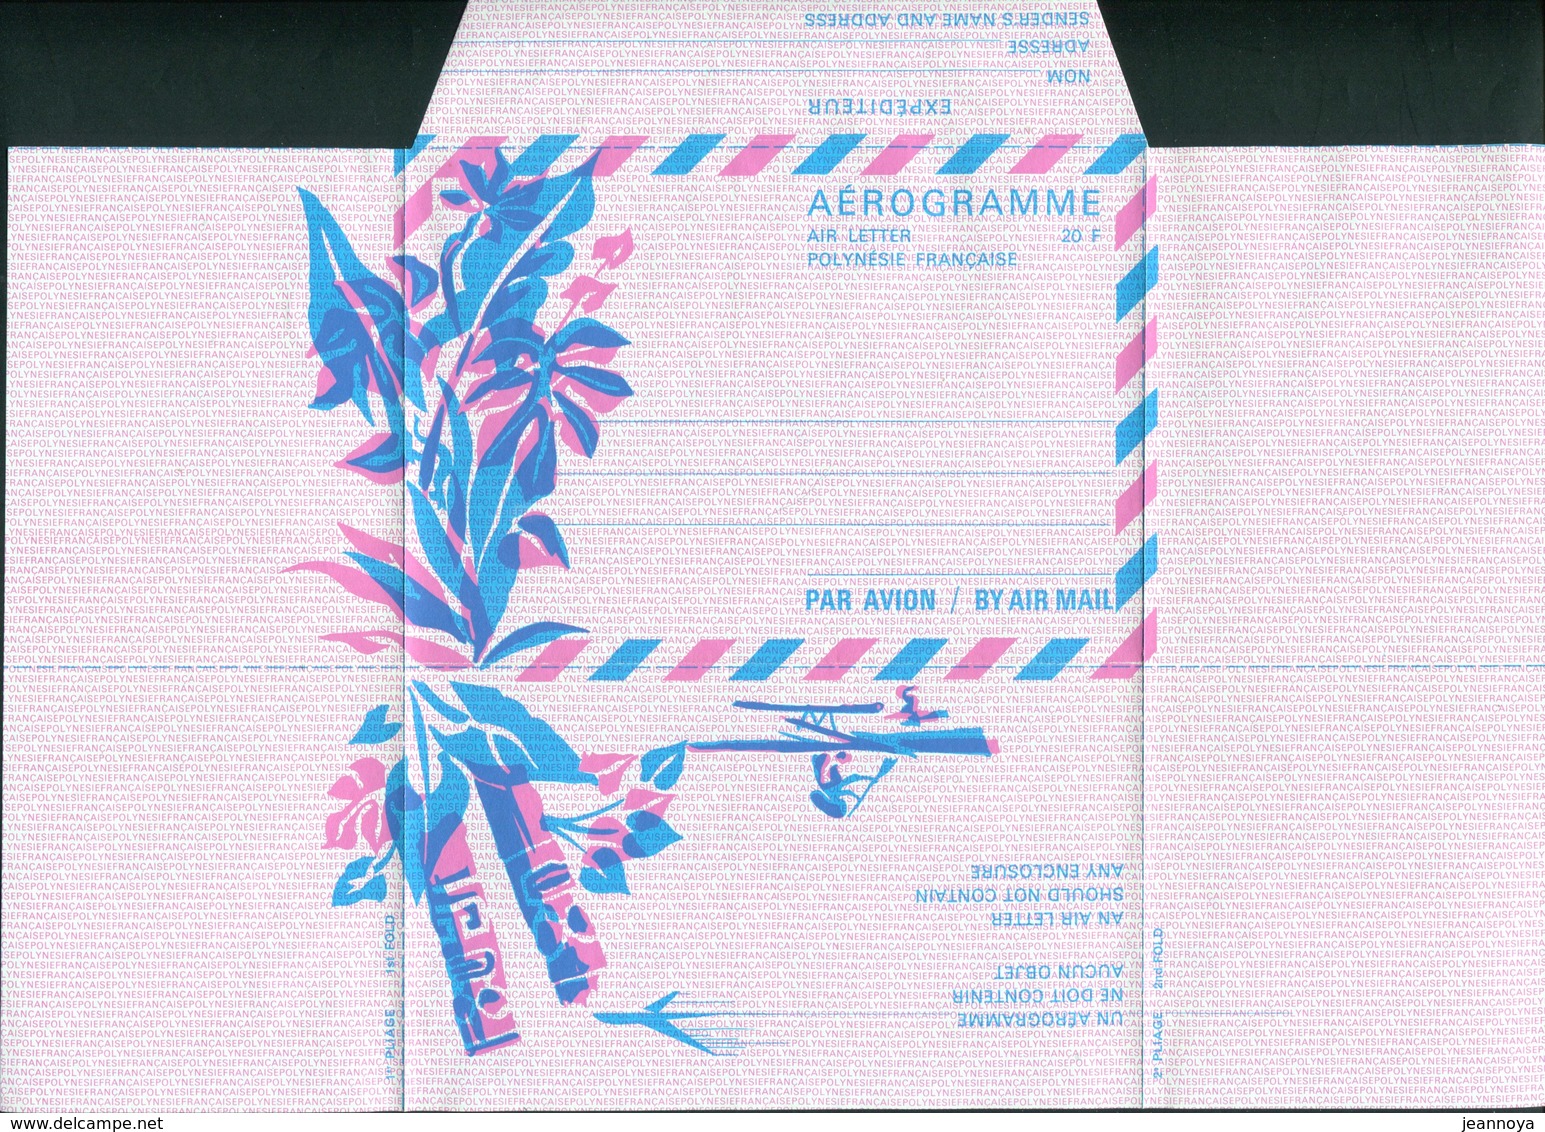 POLYNESIE FRANCAISE  - AEROGRAMME N° 1 DE 1972 - LUXE & RARE - Aerogrammi